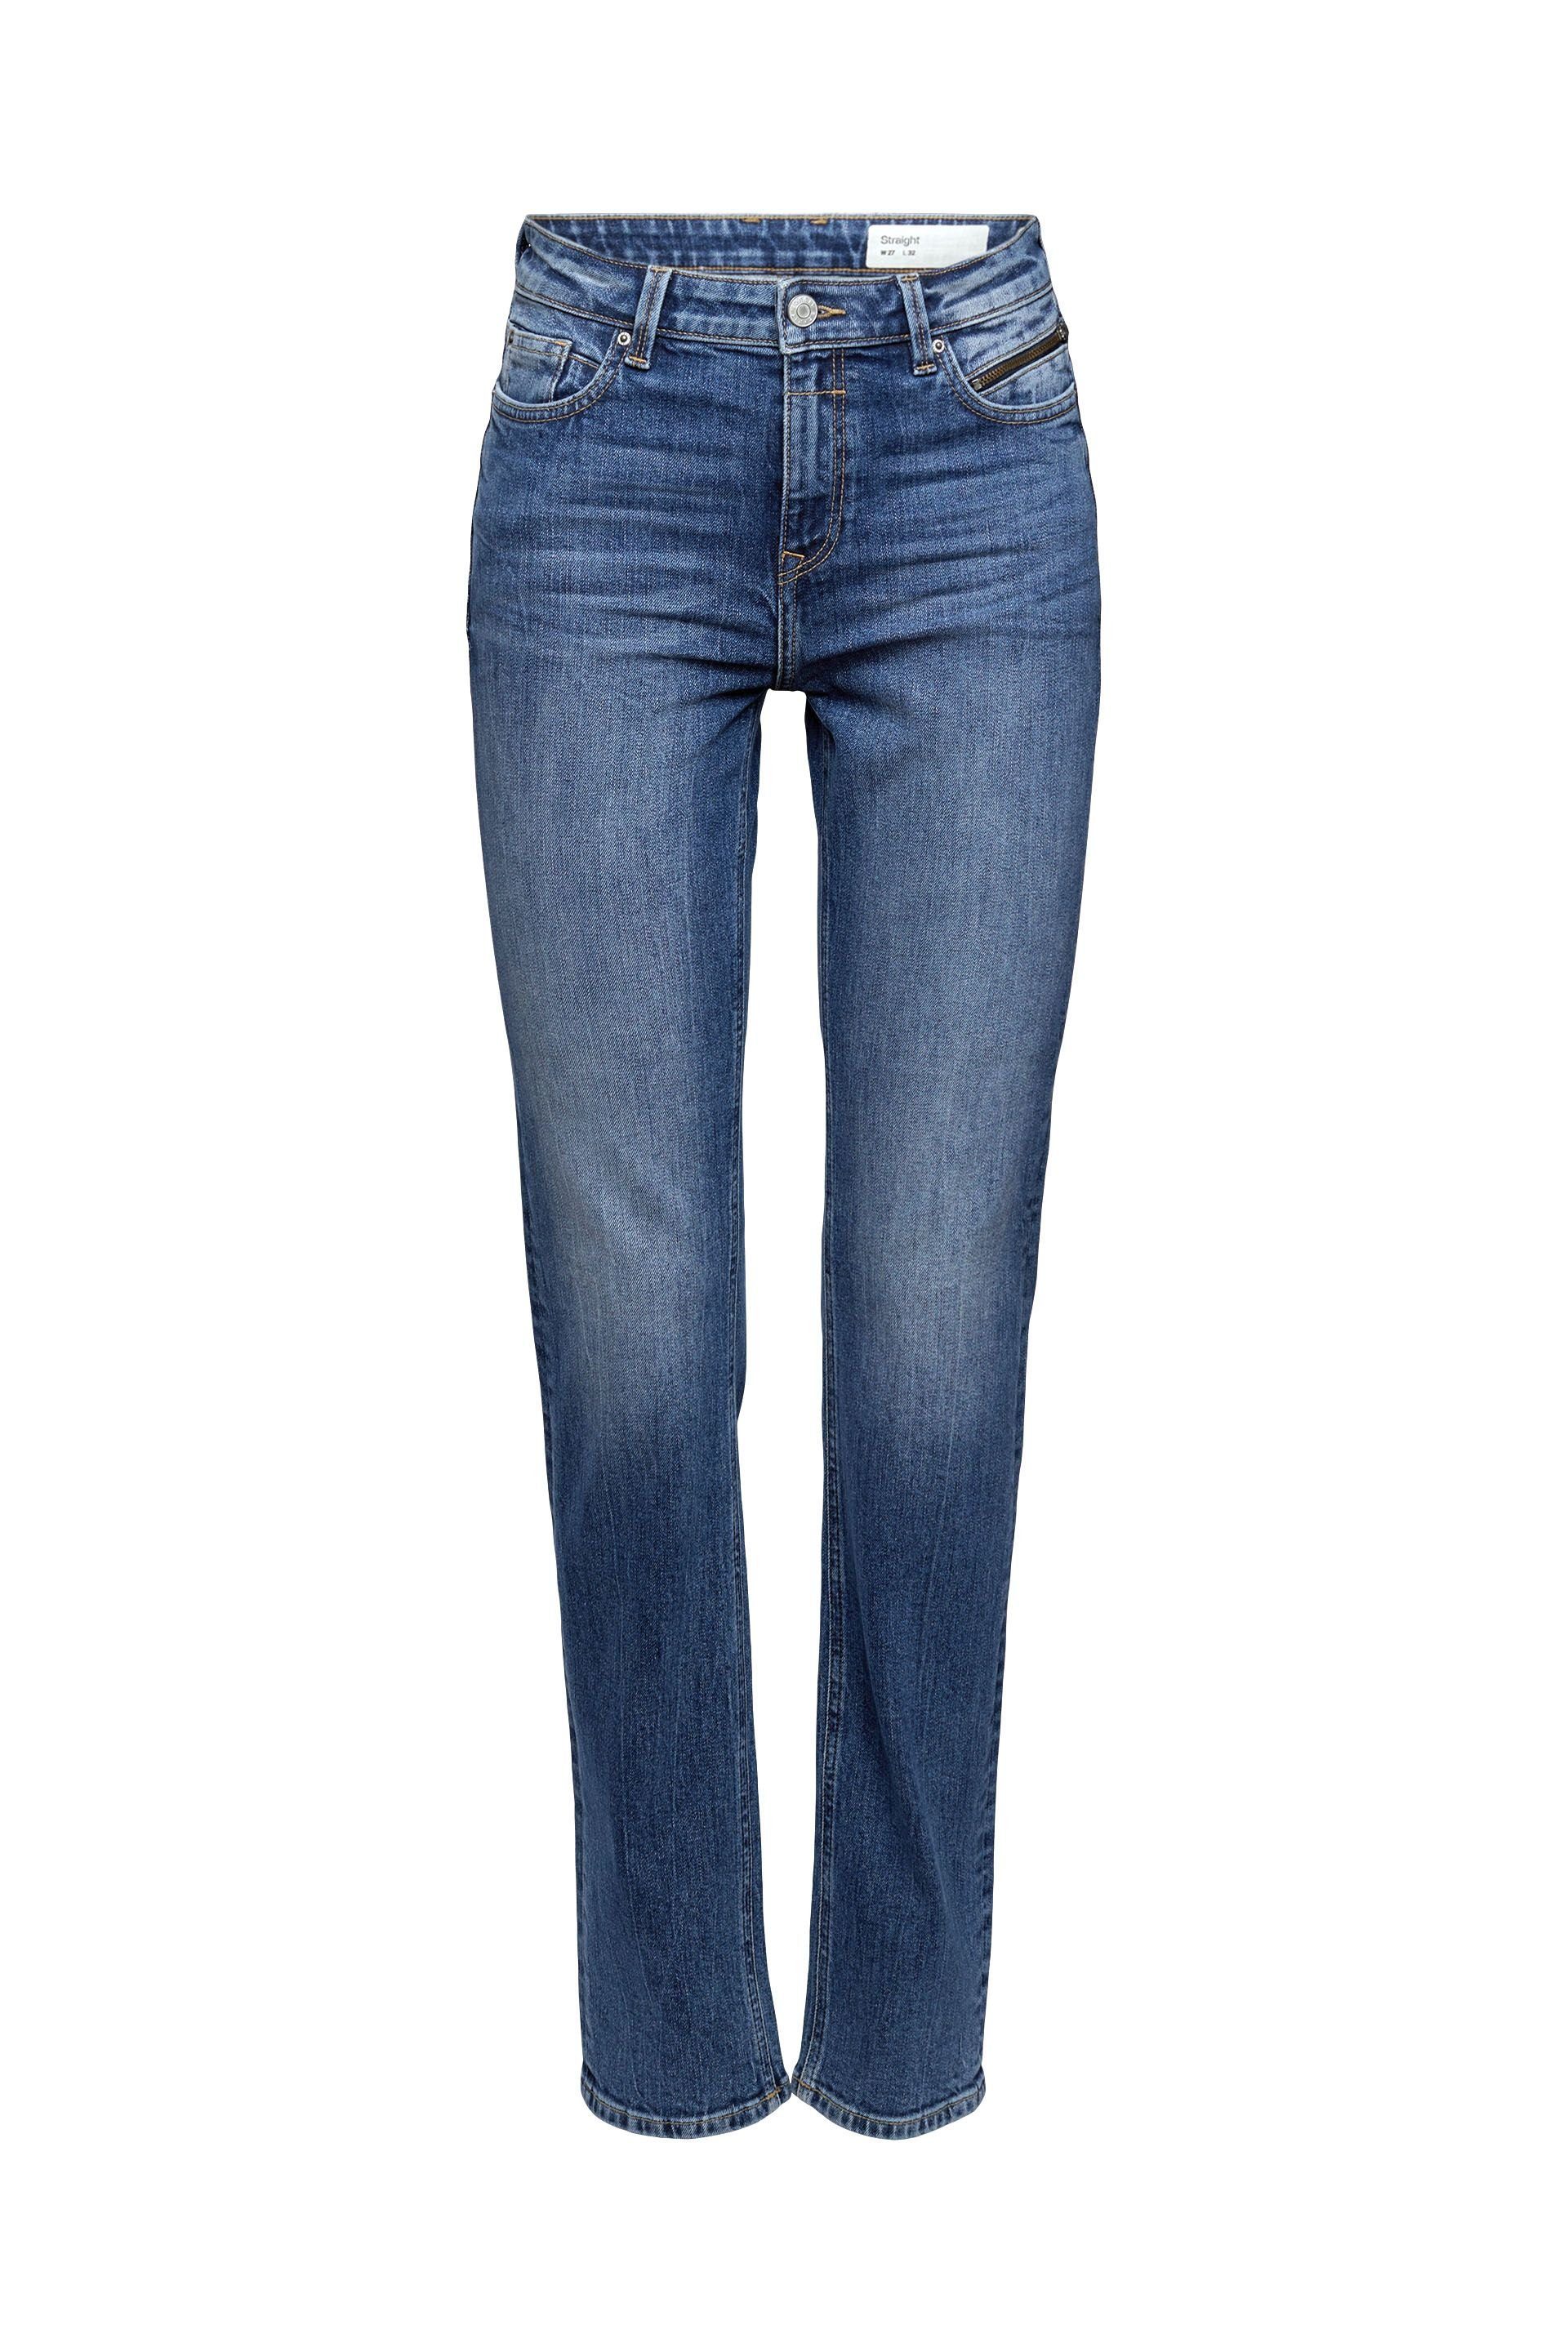 Esprit 5-Pocket-Jeans blue medium washed